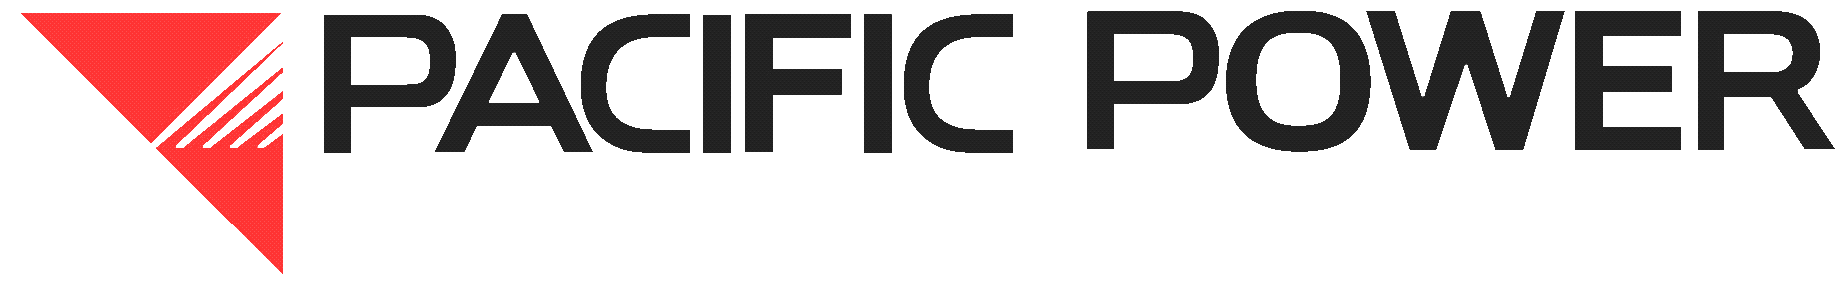 PP-logo